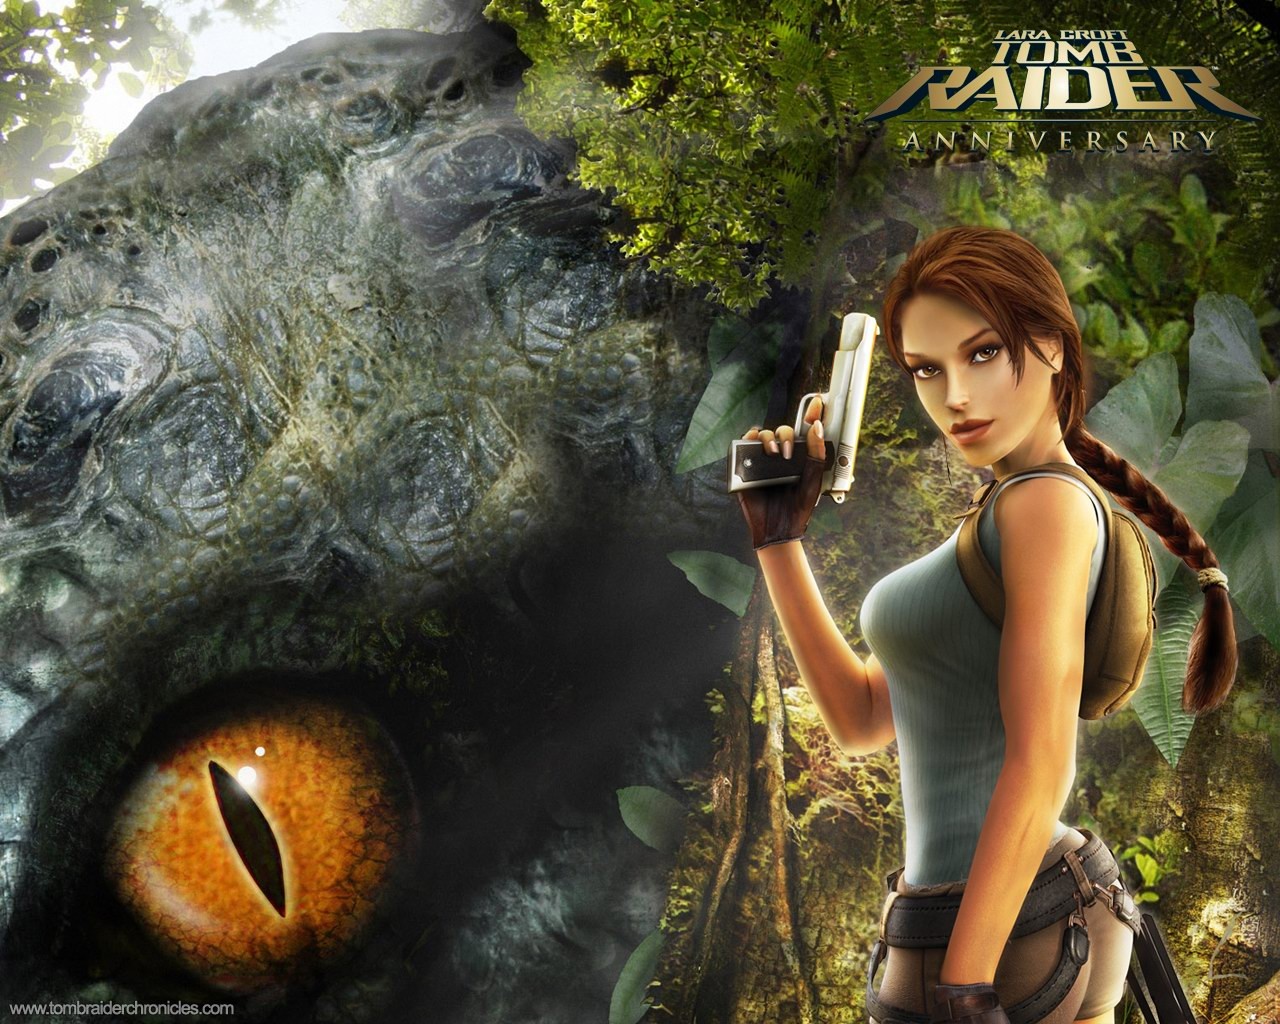 Lara Croft Tomb Raider 10th Anniversary Wallpaper #2 - 1280x1024